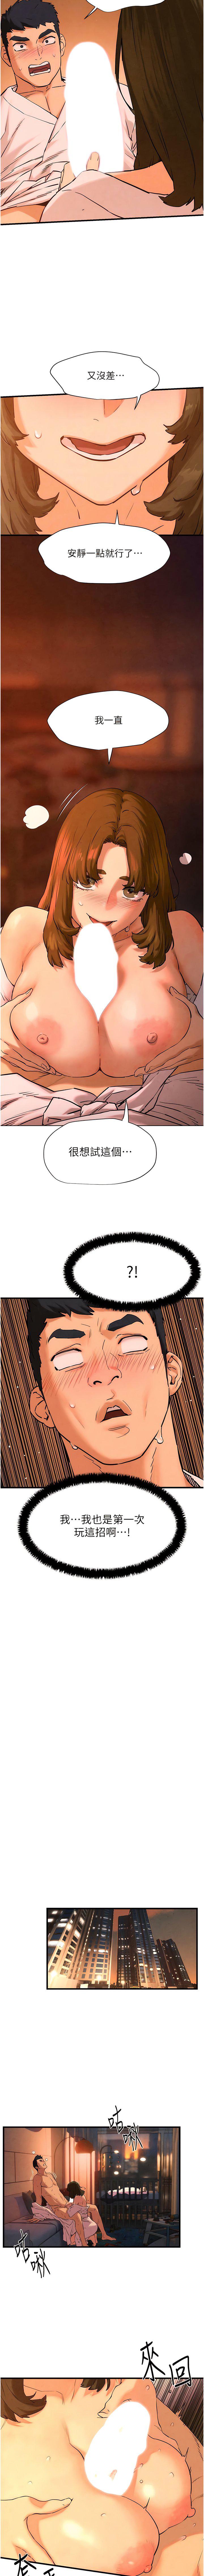 韩国污漫画 欲海交鋒 第5话 奶汁大喷发的乳交 15